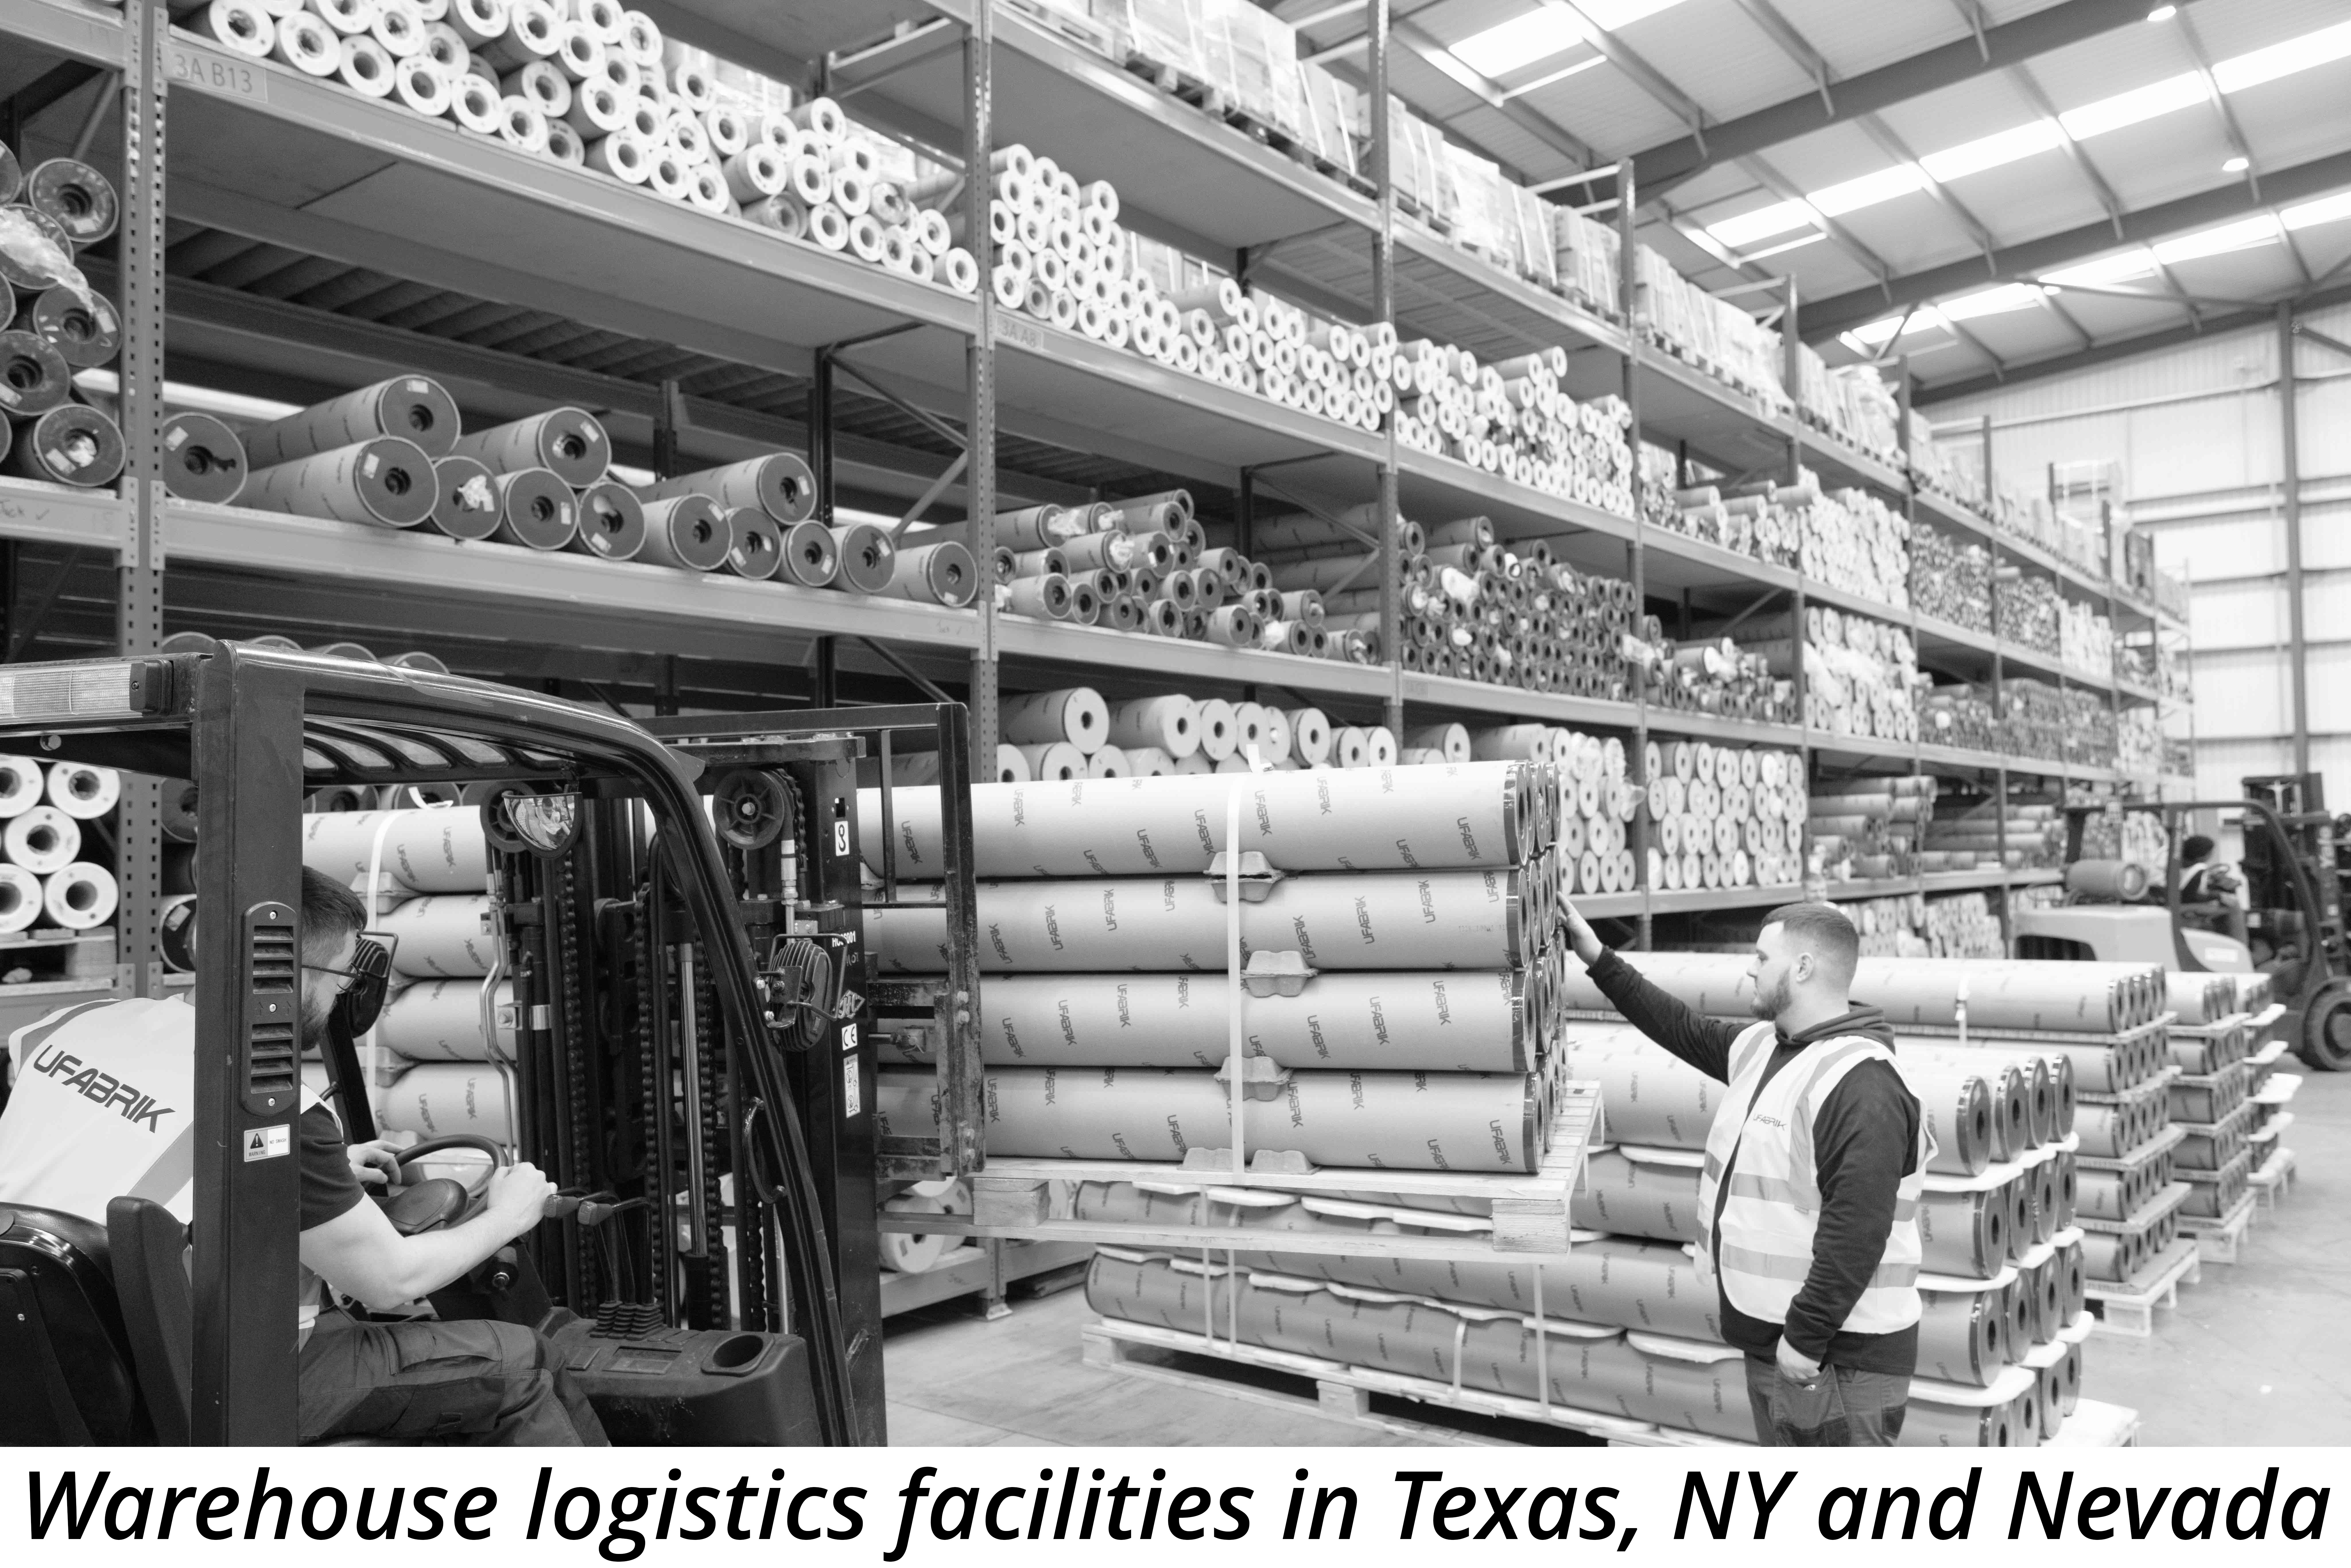 Warehouse logistics facilities in Texas, NY and Nevada